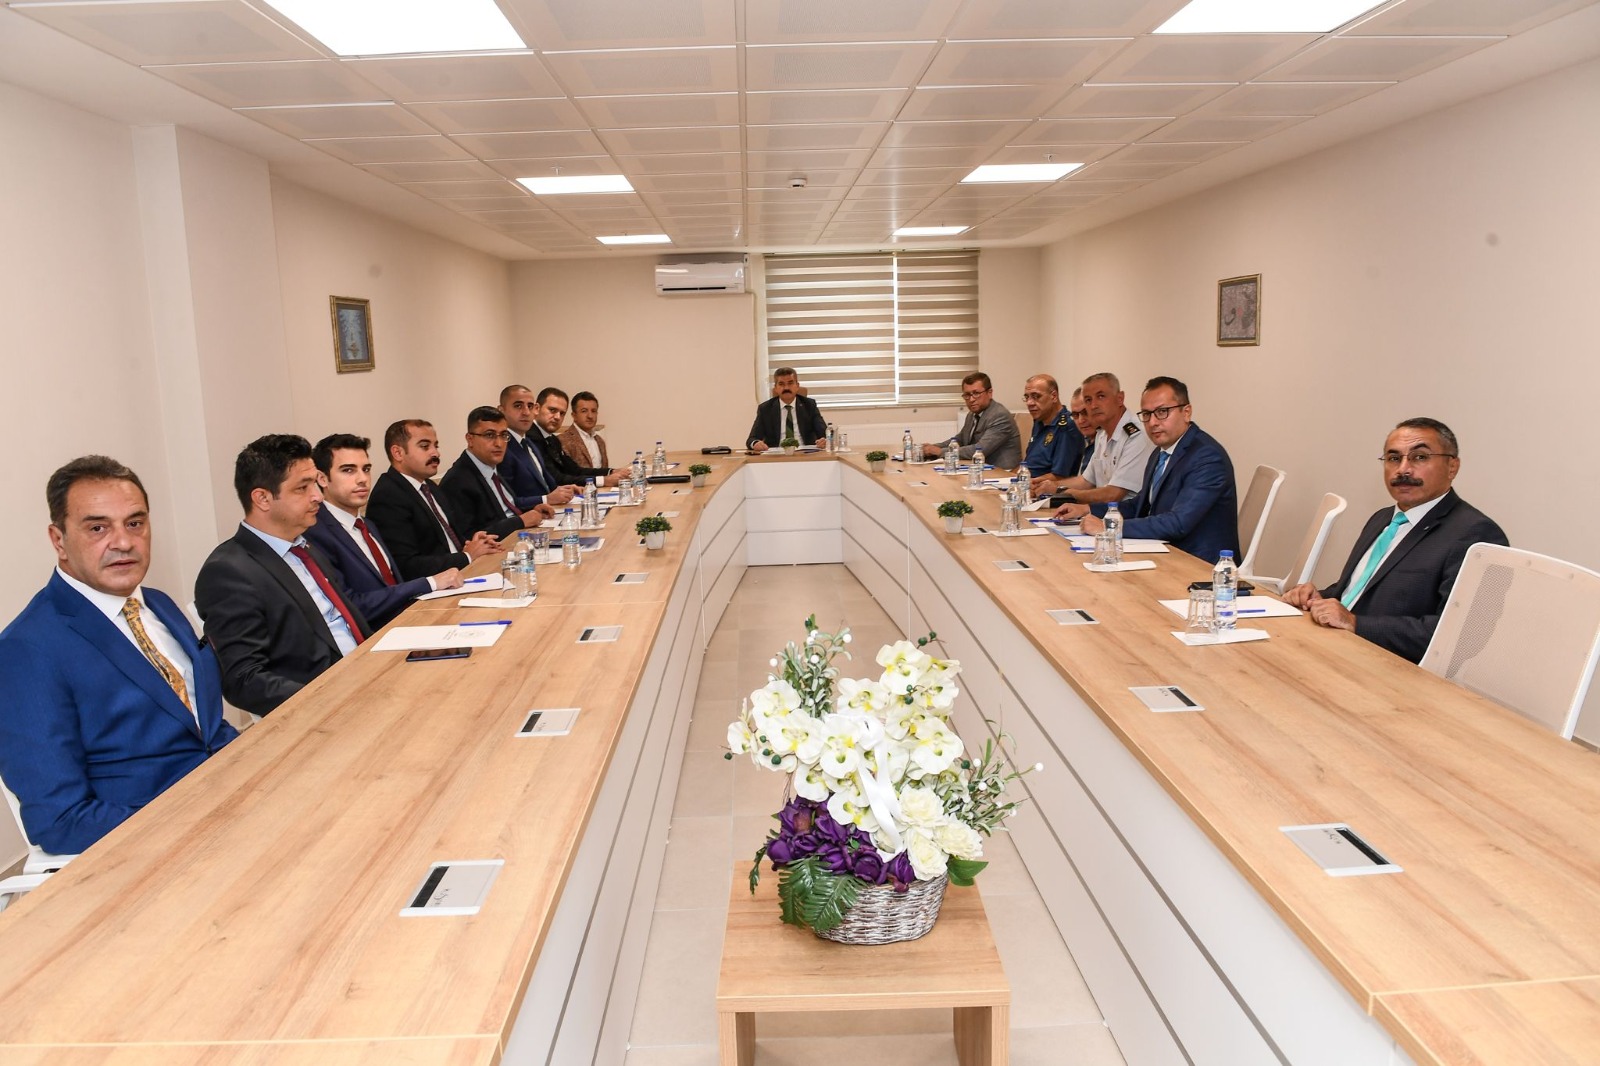 Üniversite Güvenlik ve Barınma Tedbirleri Toplantısı Vali Dr. Turan Ergün başkanlığında yapıldı